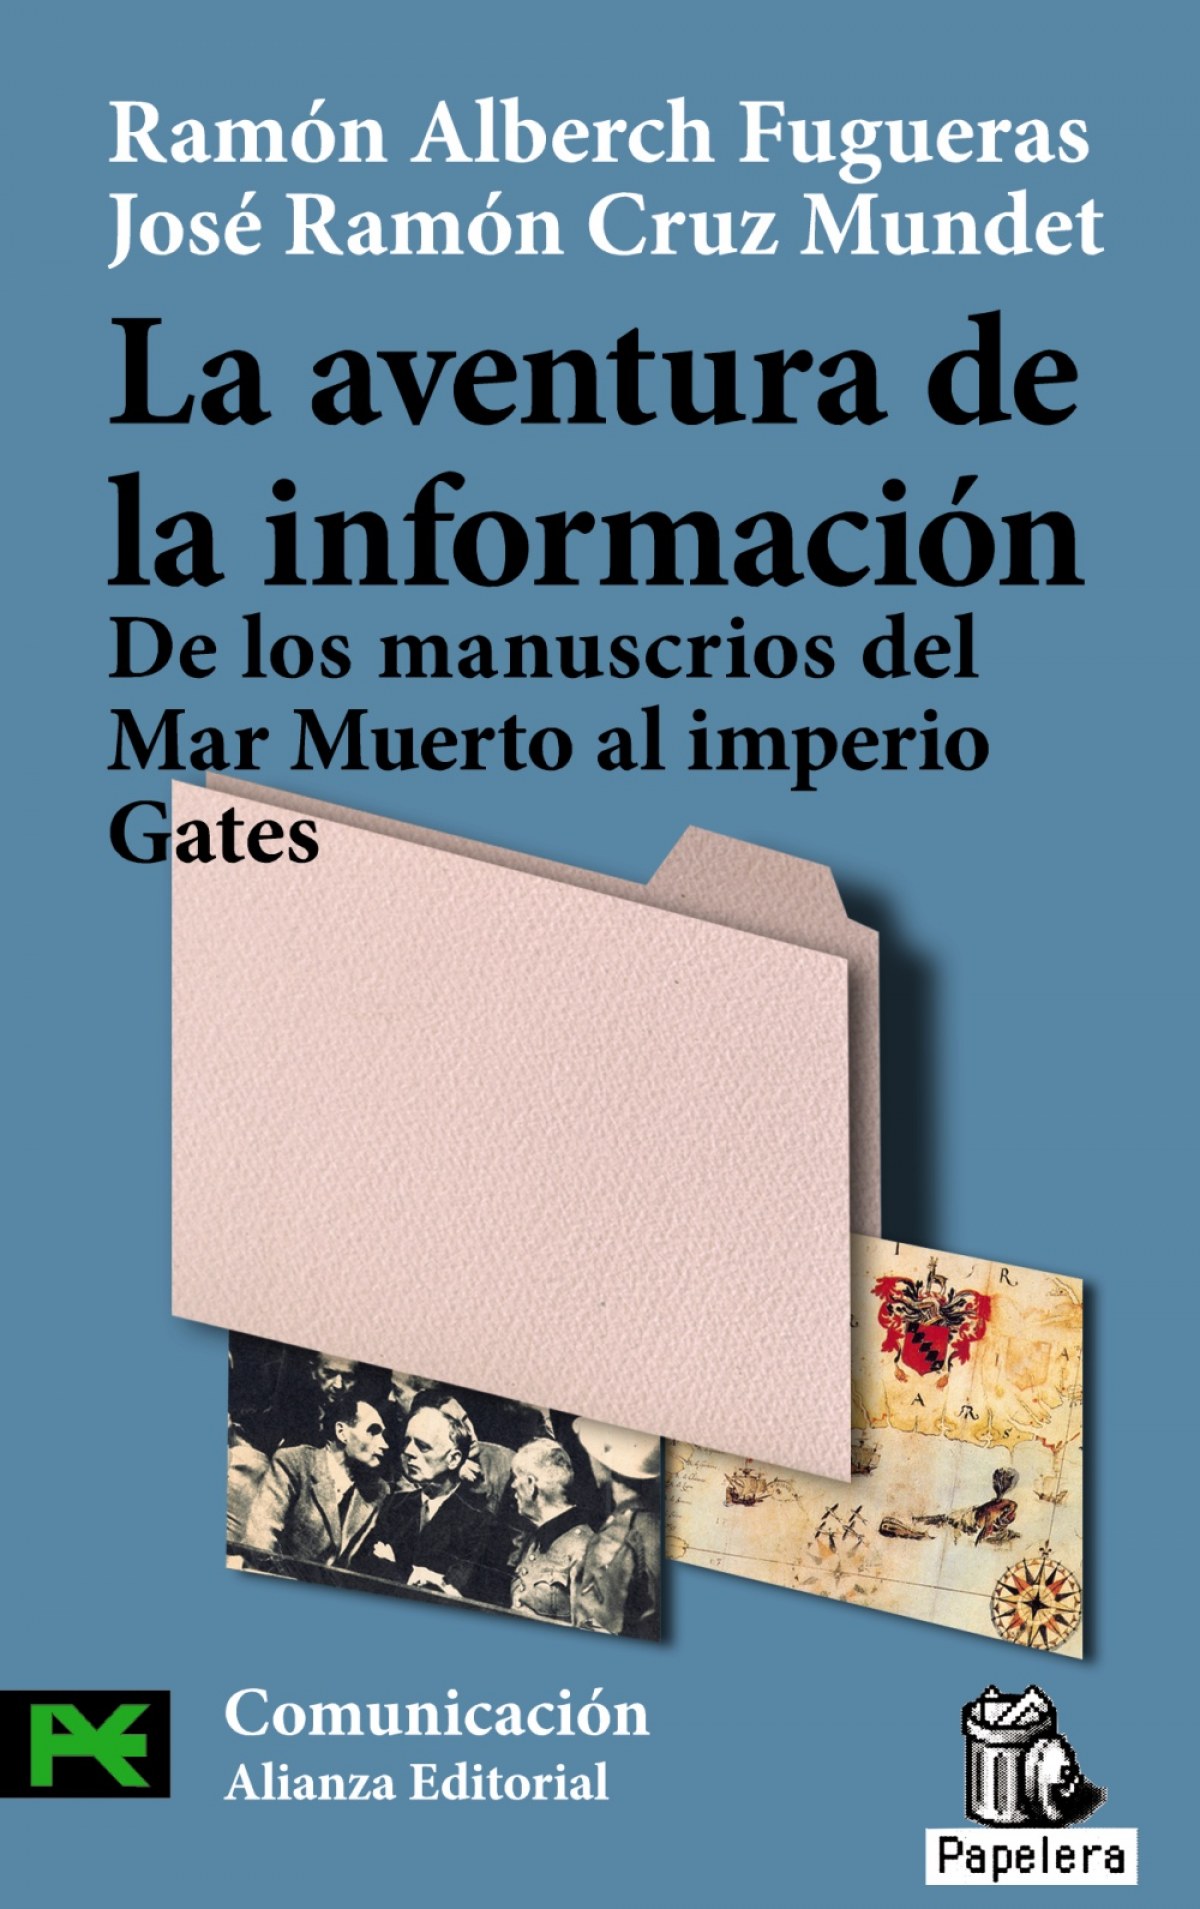 La aventura de la información - Alberch Fugueras, Ramón/Cruz Mundet, Jose Ramón